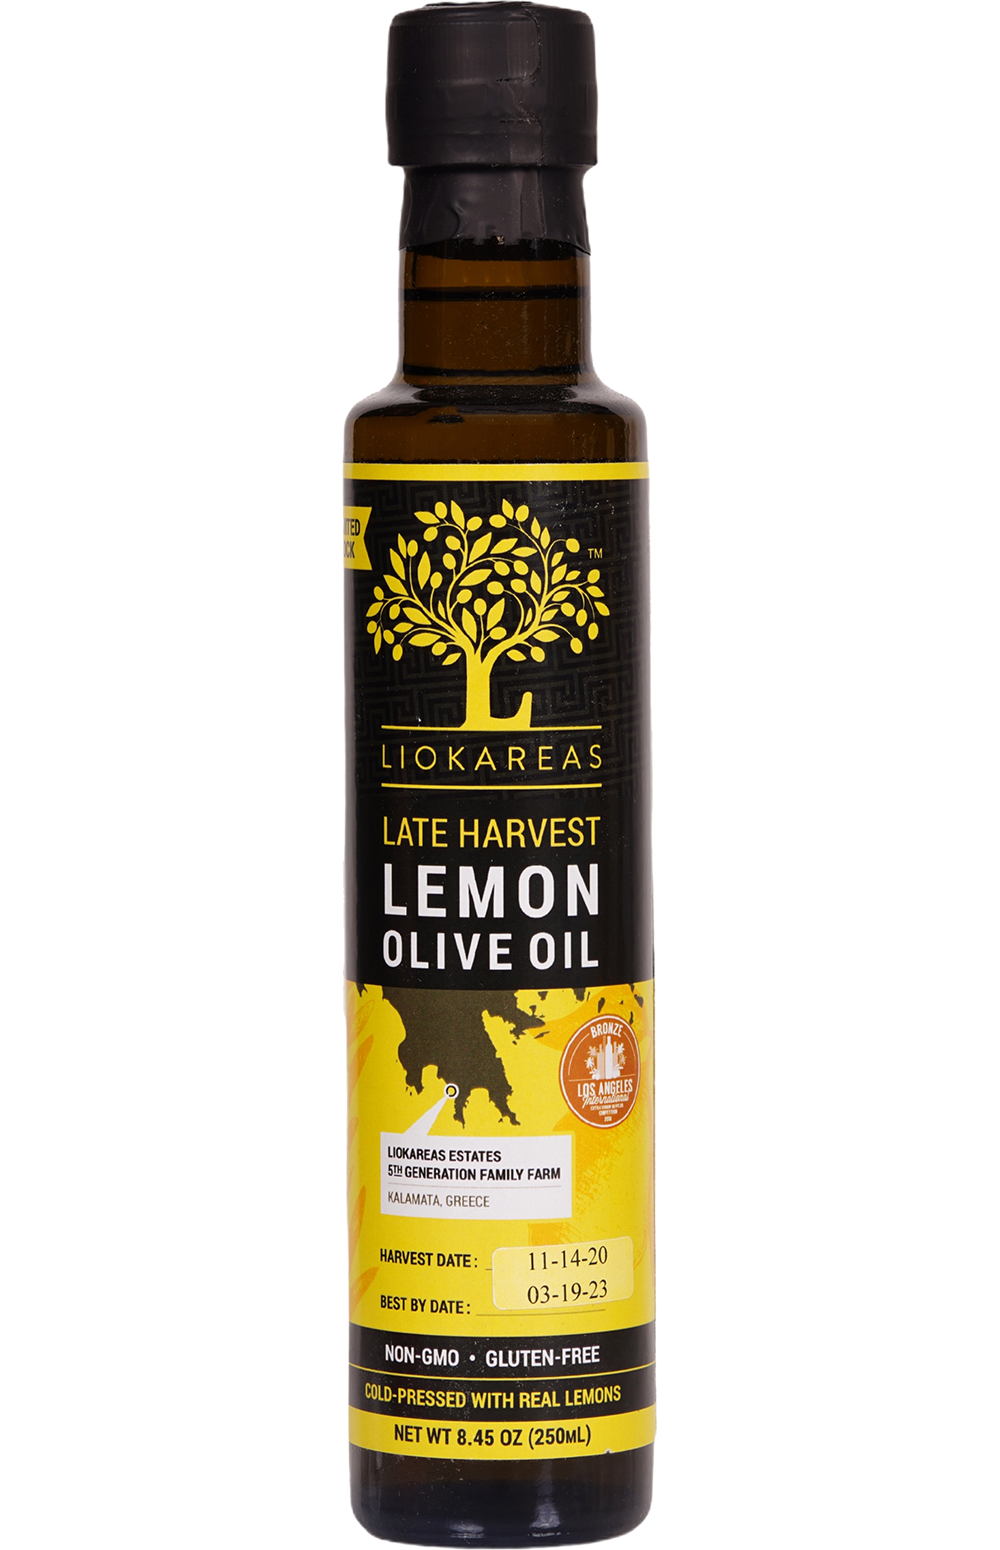 LiokareasLate Harvest Lemon